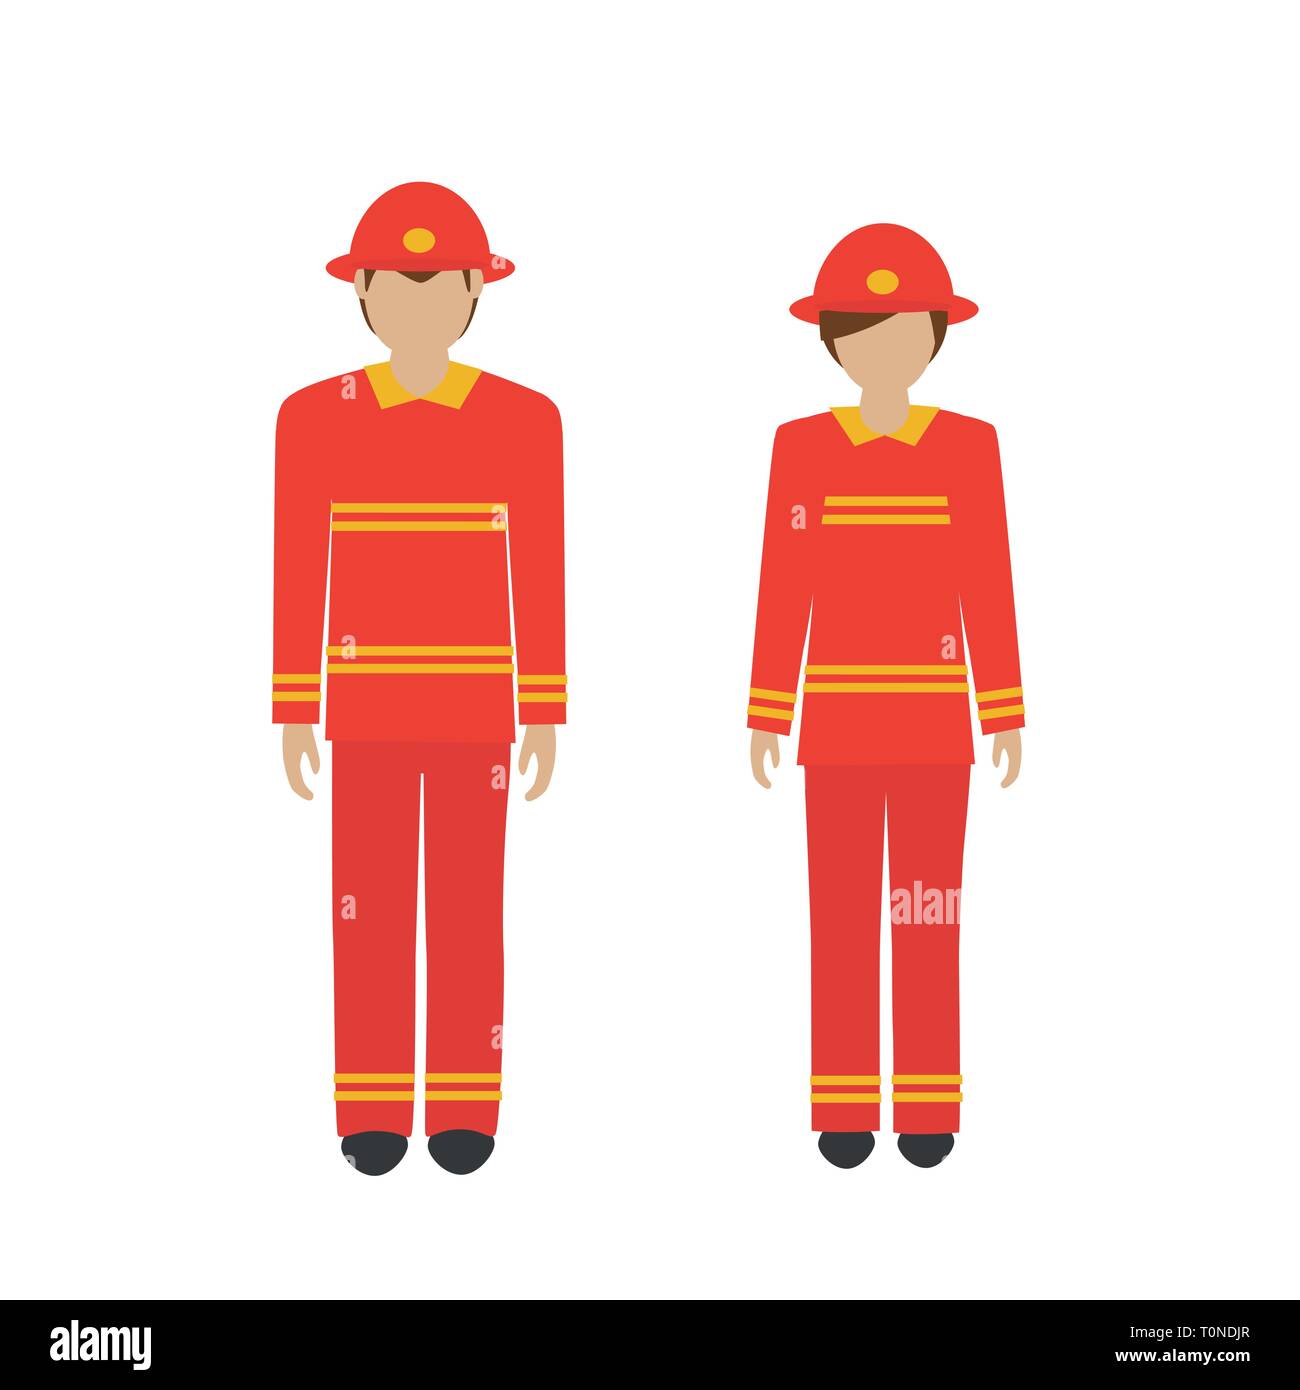 Mann und Frau Charakter Feuerwehrmann in Rot auf weißem Hintergrund Vektor-illustration EPS 10 isoliert Stock Vektor